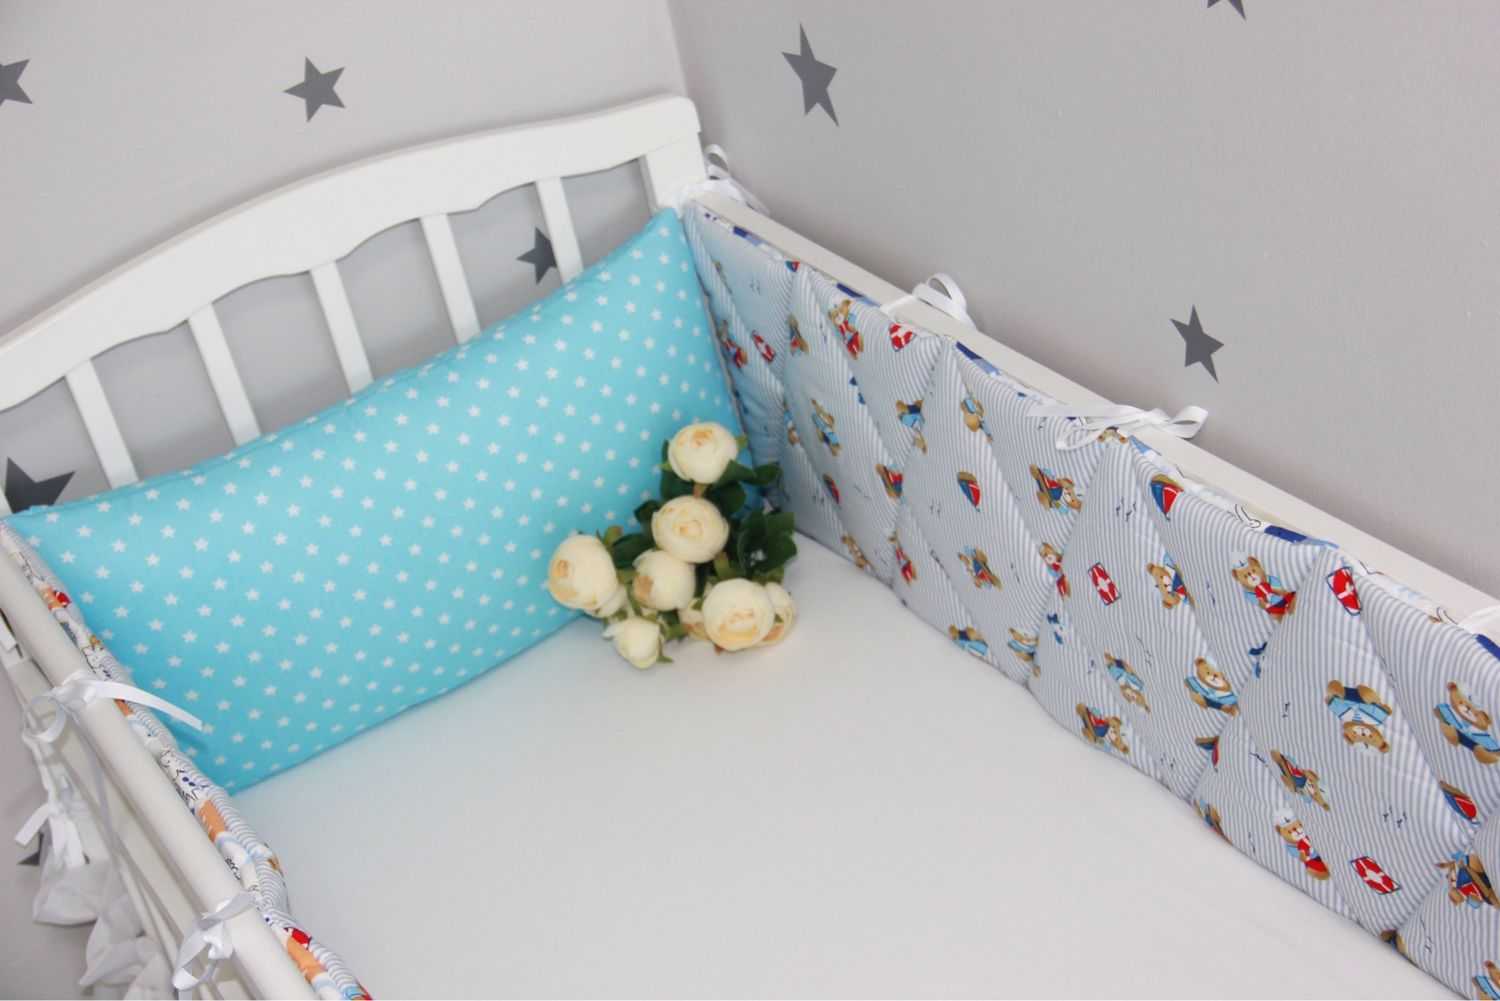 Бортики в кроватку для новорожденных мальчиков и девочек: правила выбора и ухода, влияние белого цвета на ребенка, а также фото